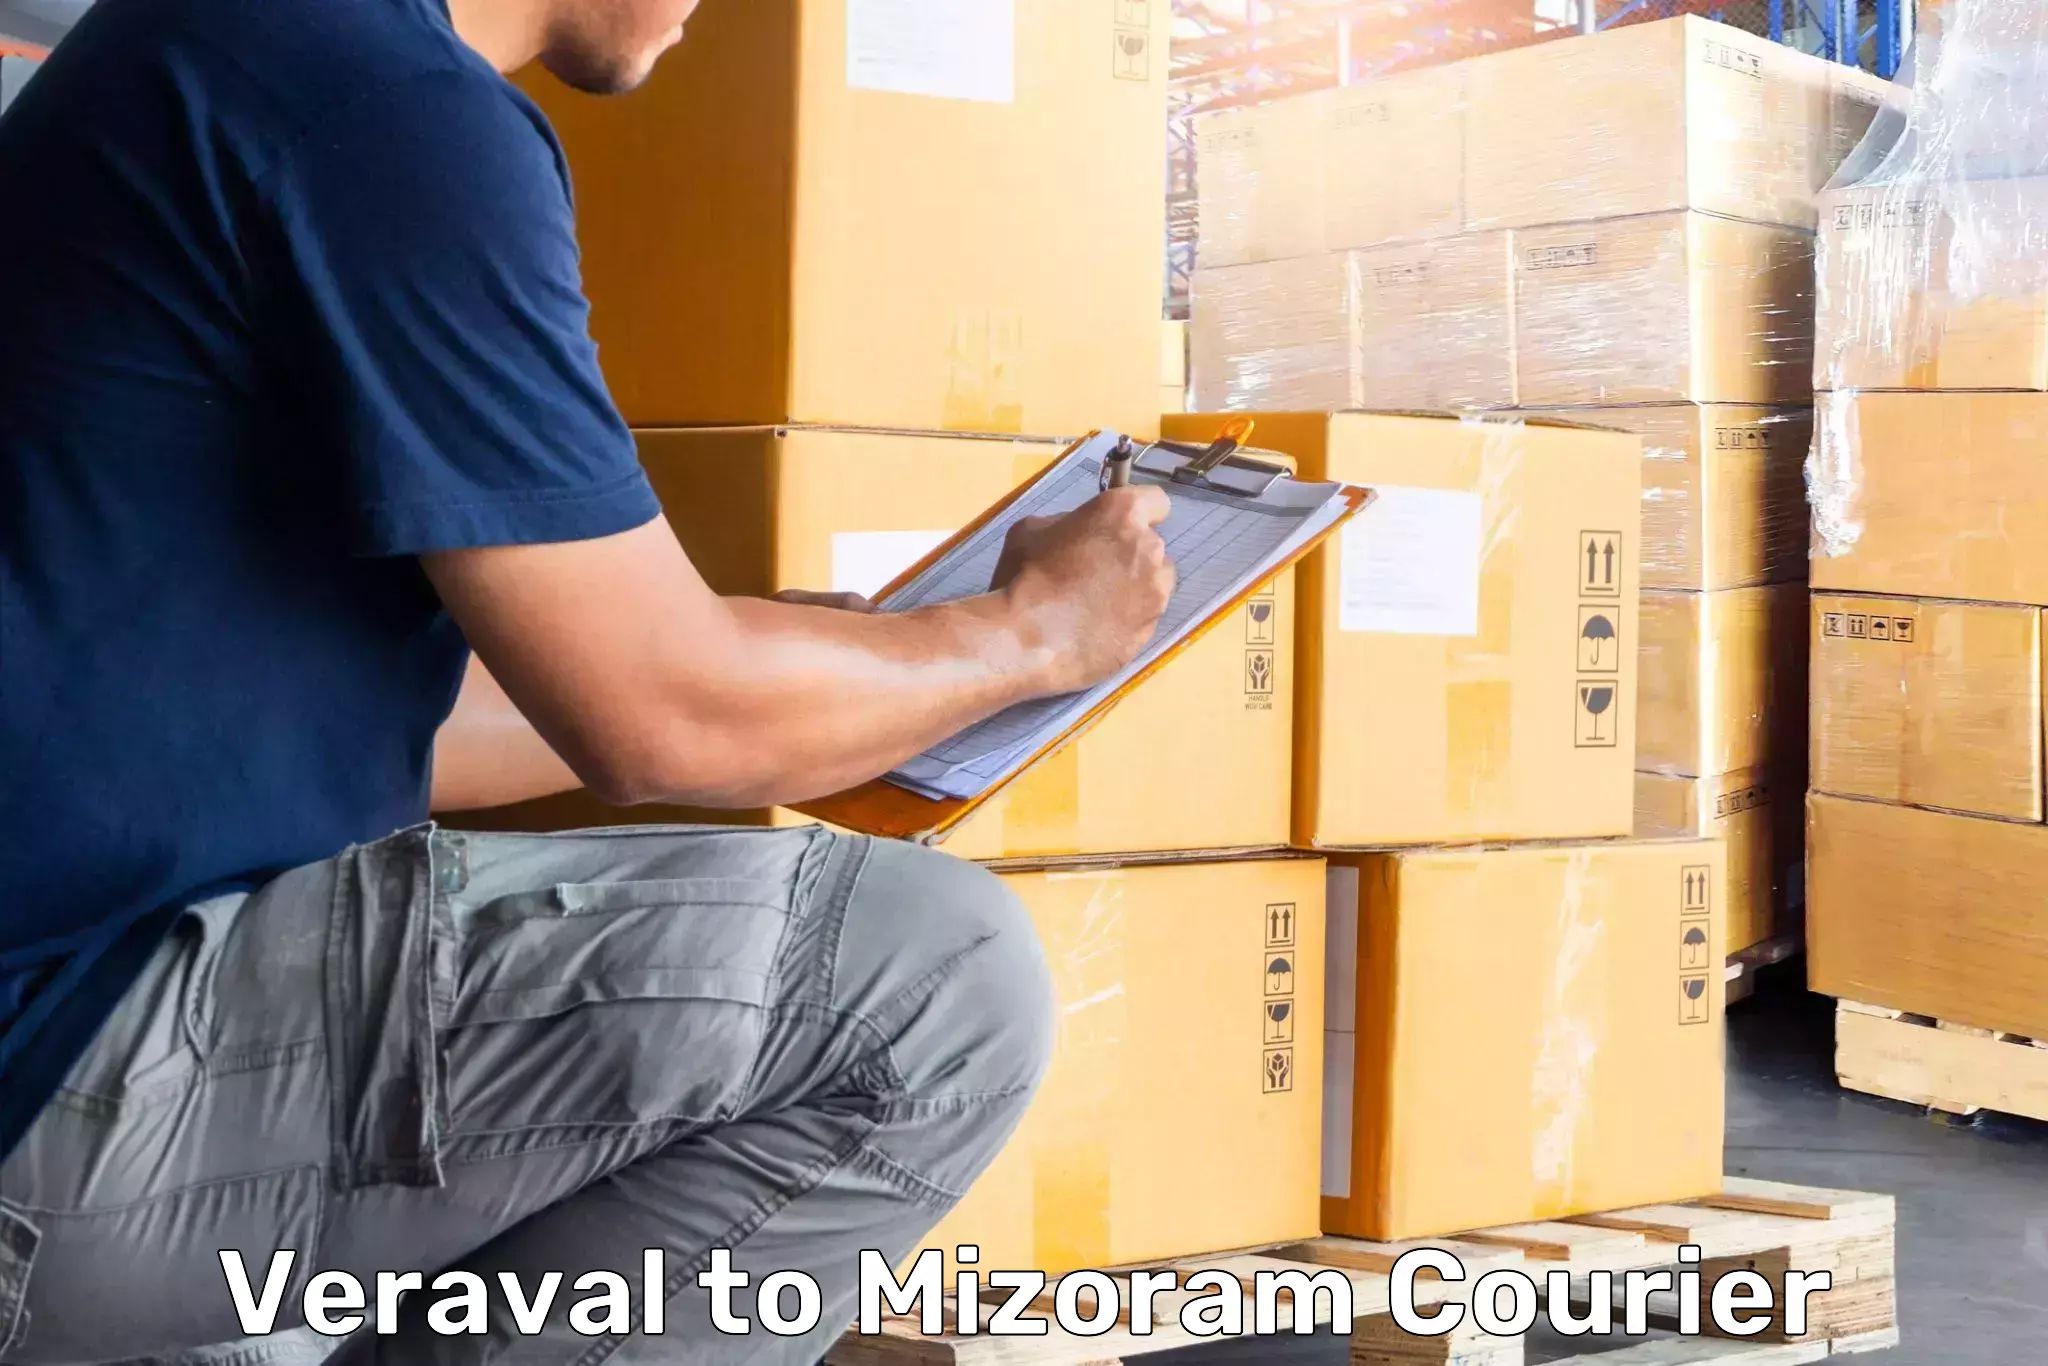 Luggage forwarding service Veraval to Mizoram